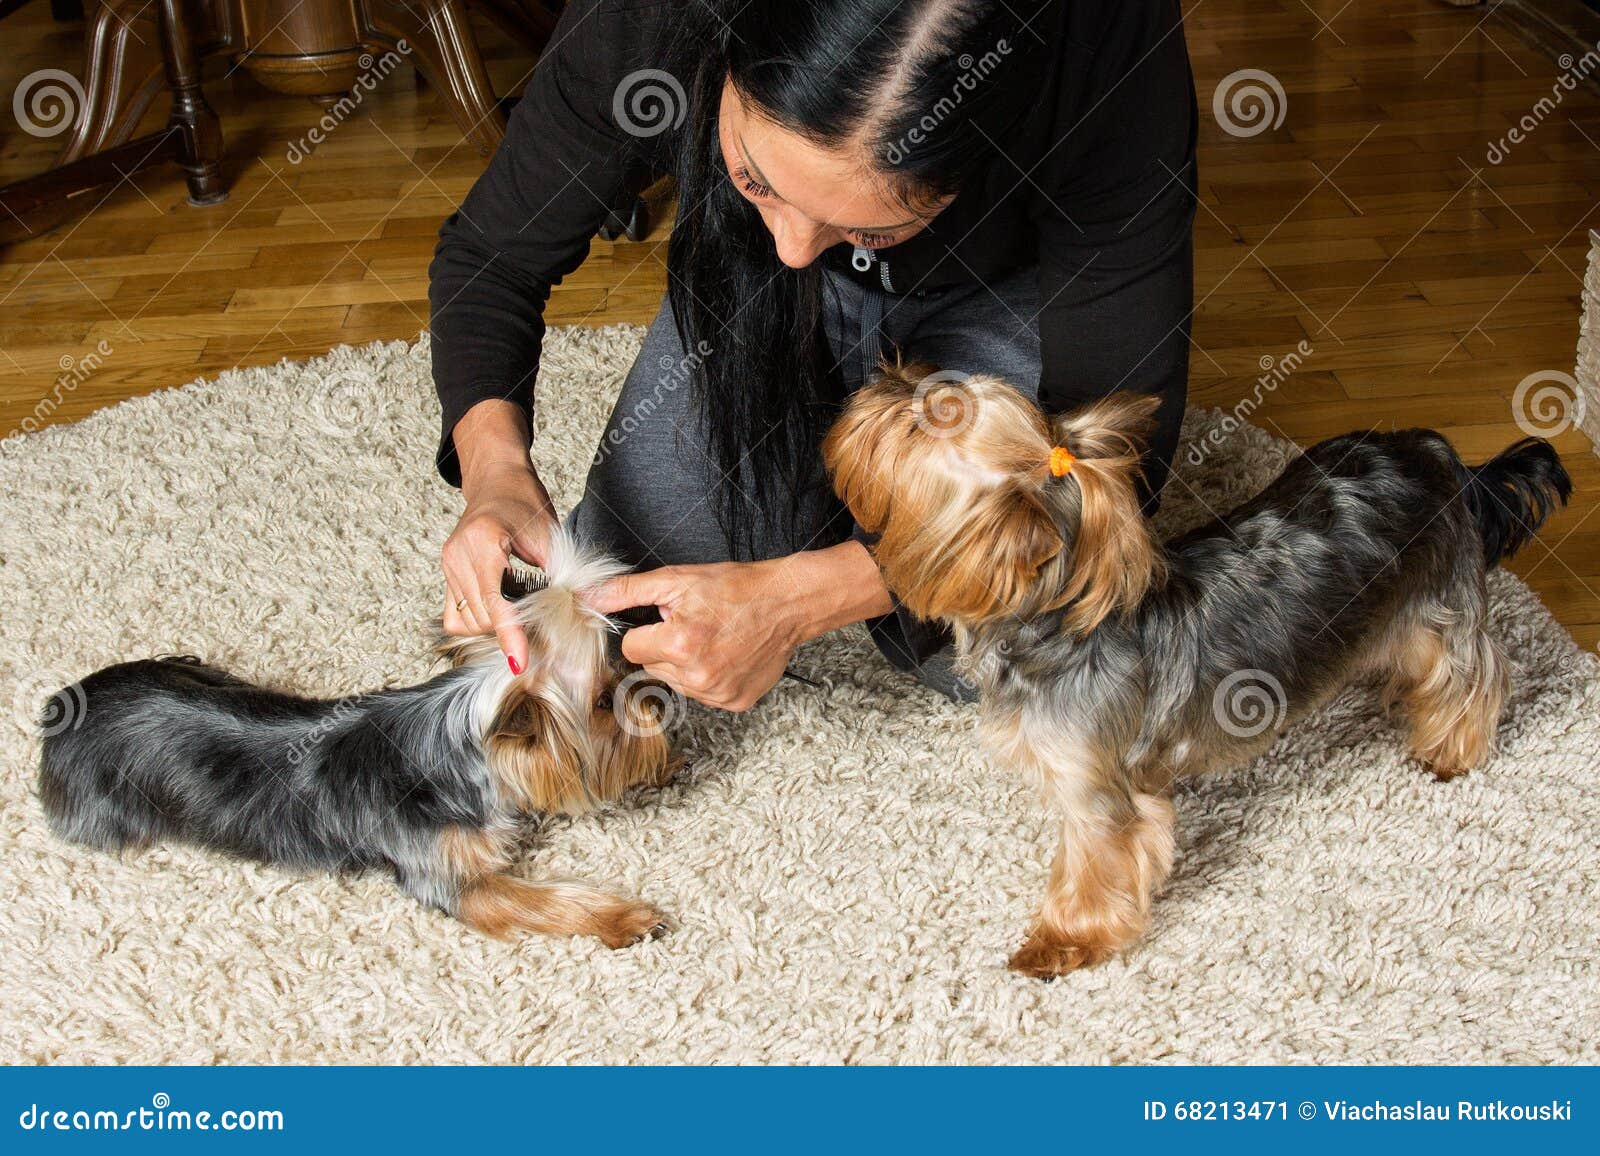 Dog knotting a woman